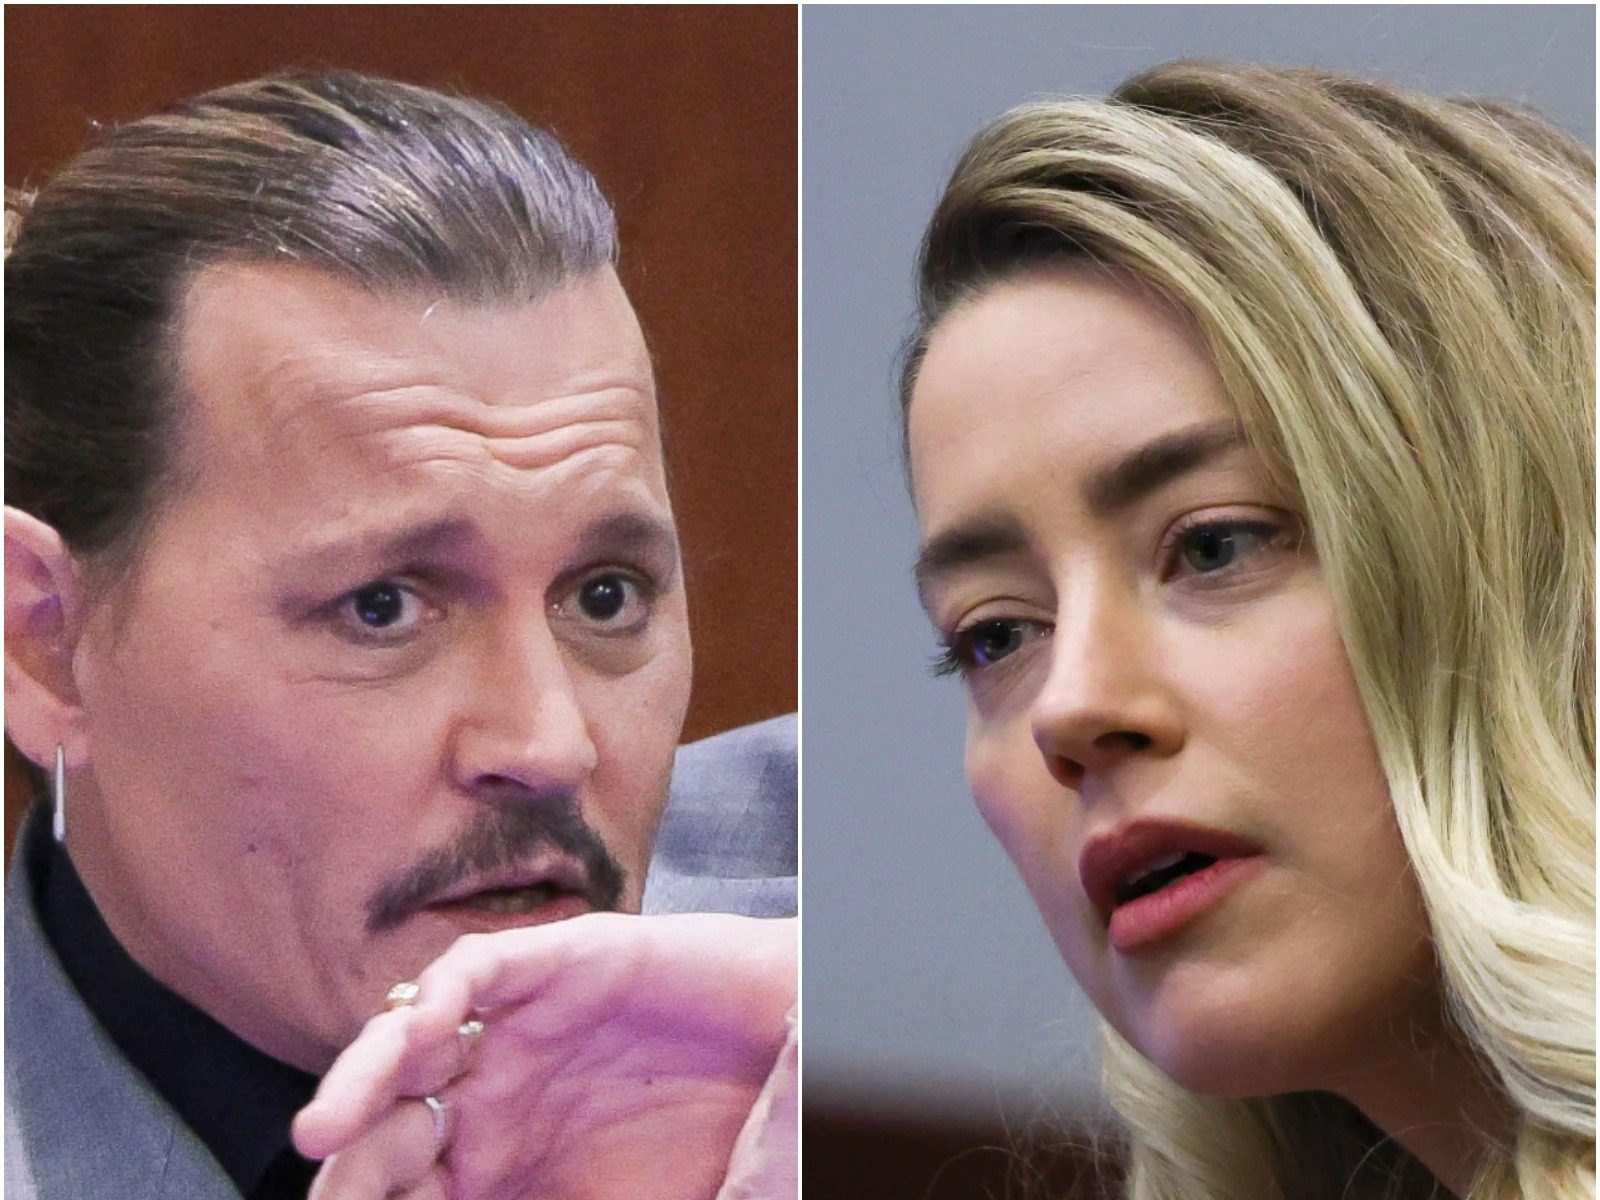  Johnny Depp ਤੇ Amber Heard ਦਾ ਮਾਮਲਾ ਫਿਲਮੀ ਕਹਾਣੀ ਤੋਂ ਨਹੀਂ ਘੱਟ, ਜਾਣਨ ਲਈ ਪੜ੍ਹੋ ਖਬਰ 
